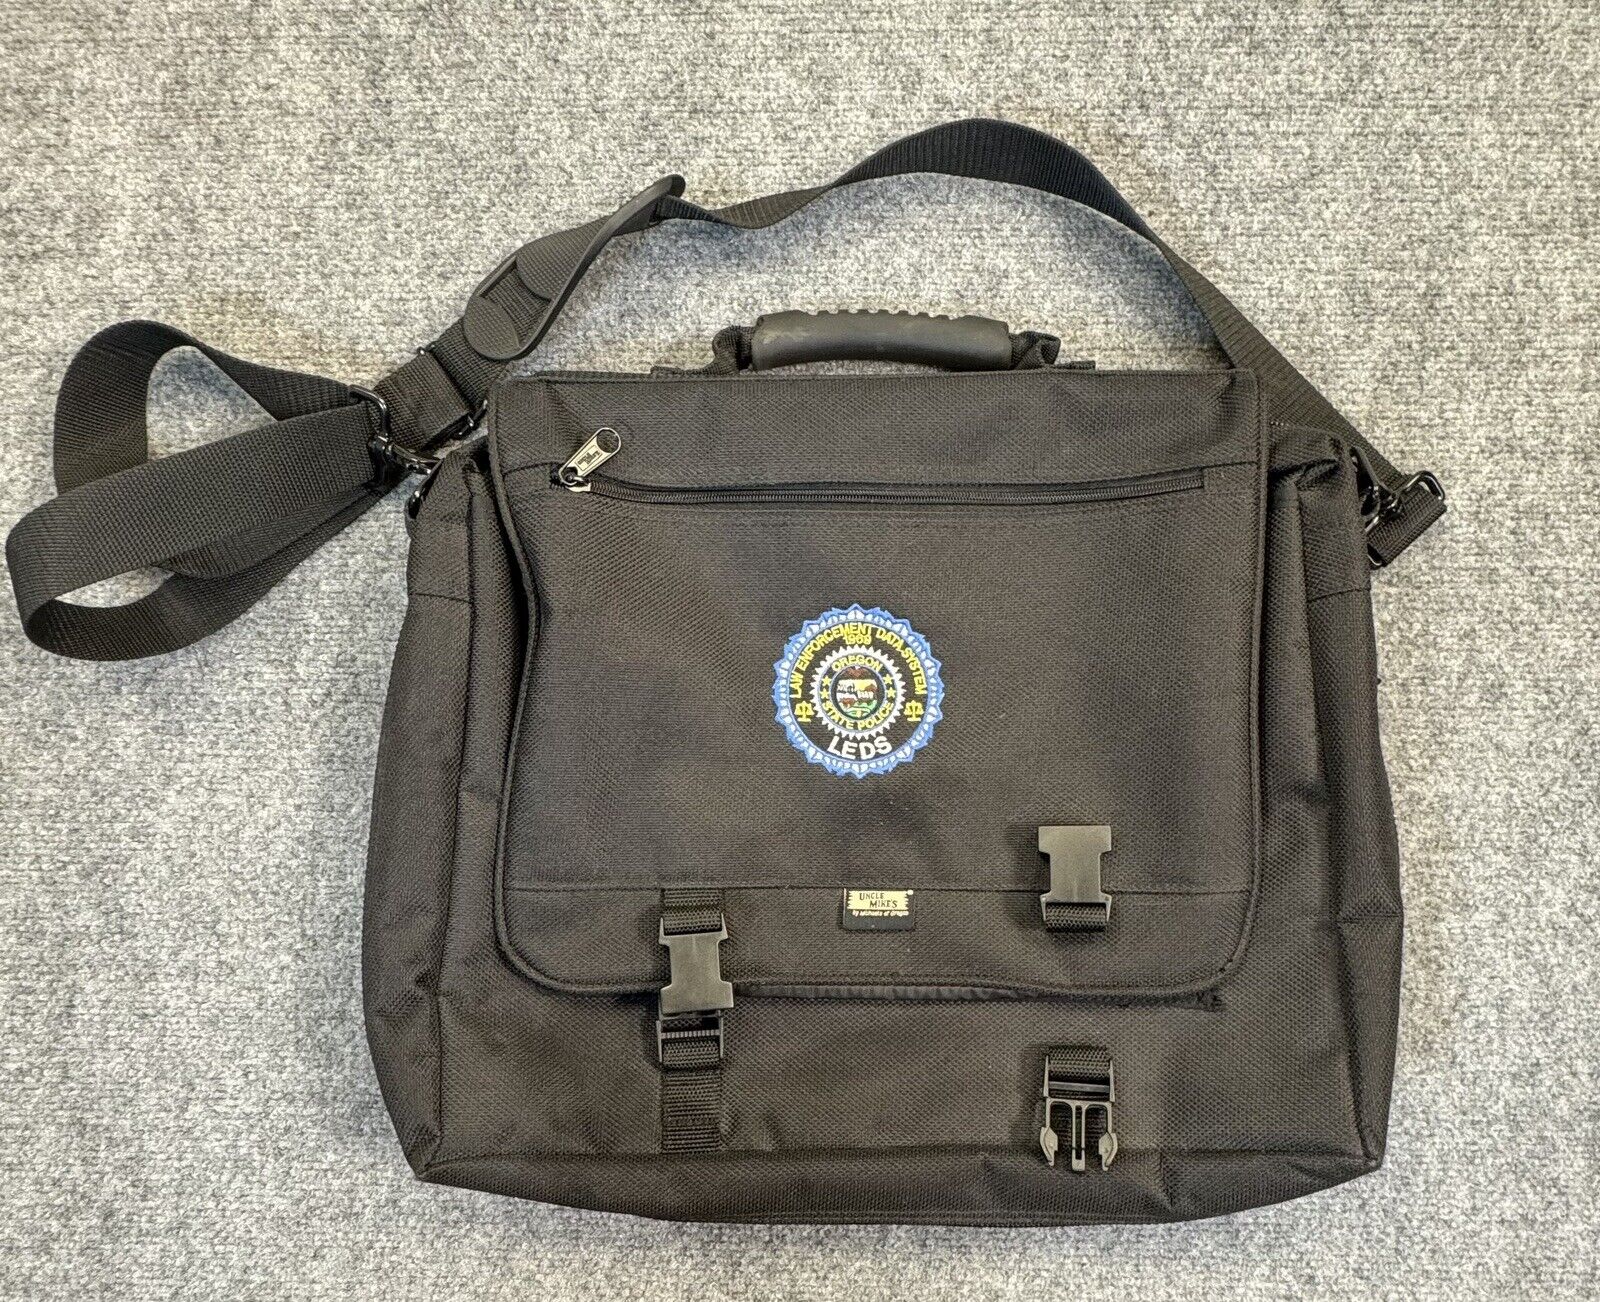 Uncle Mikes Tactical Computer Messenger Bag Black LEDS Patch Canvas Pockets